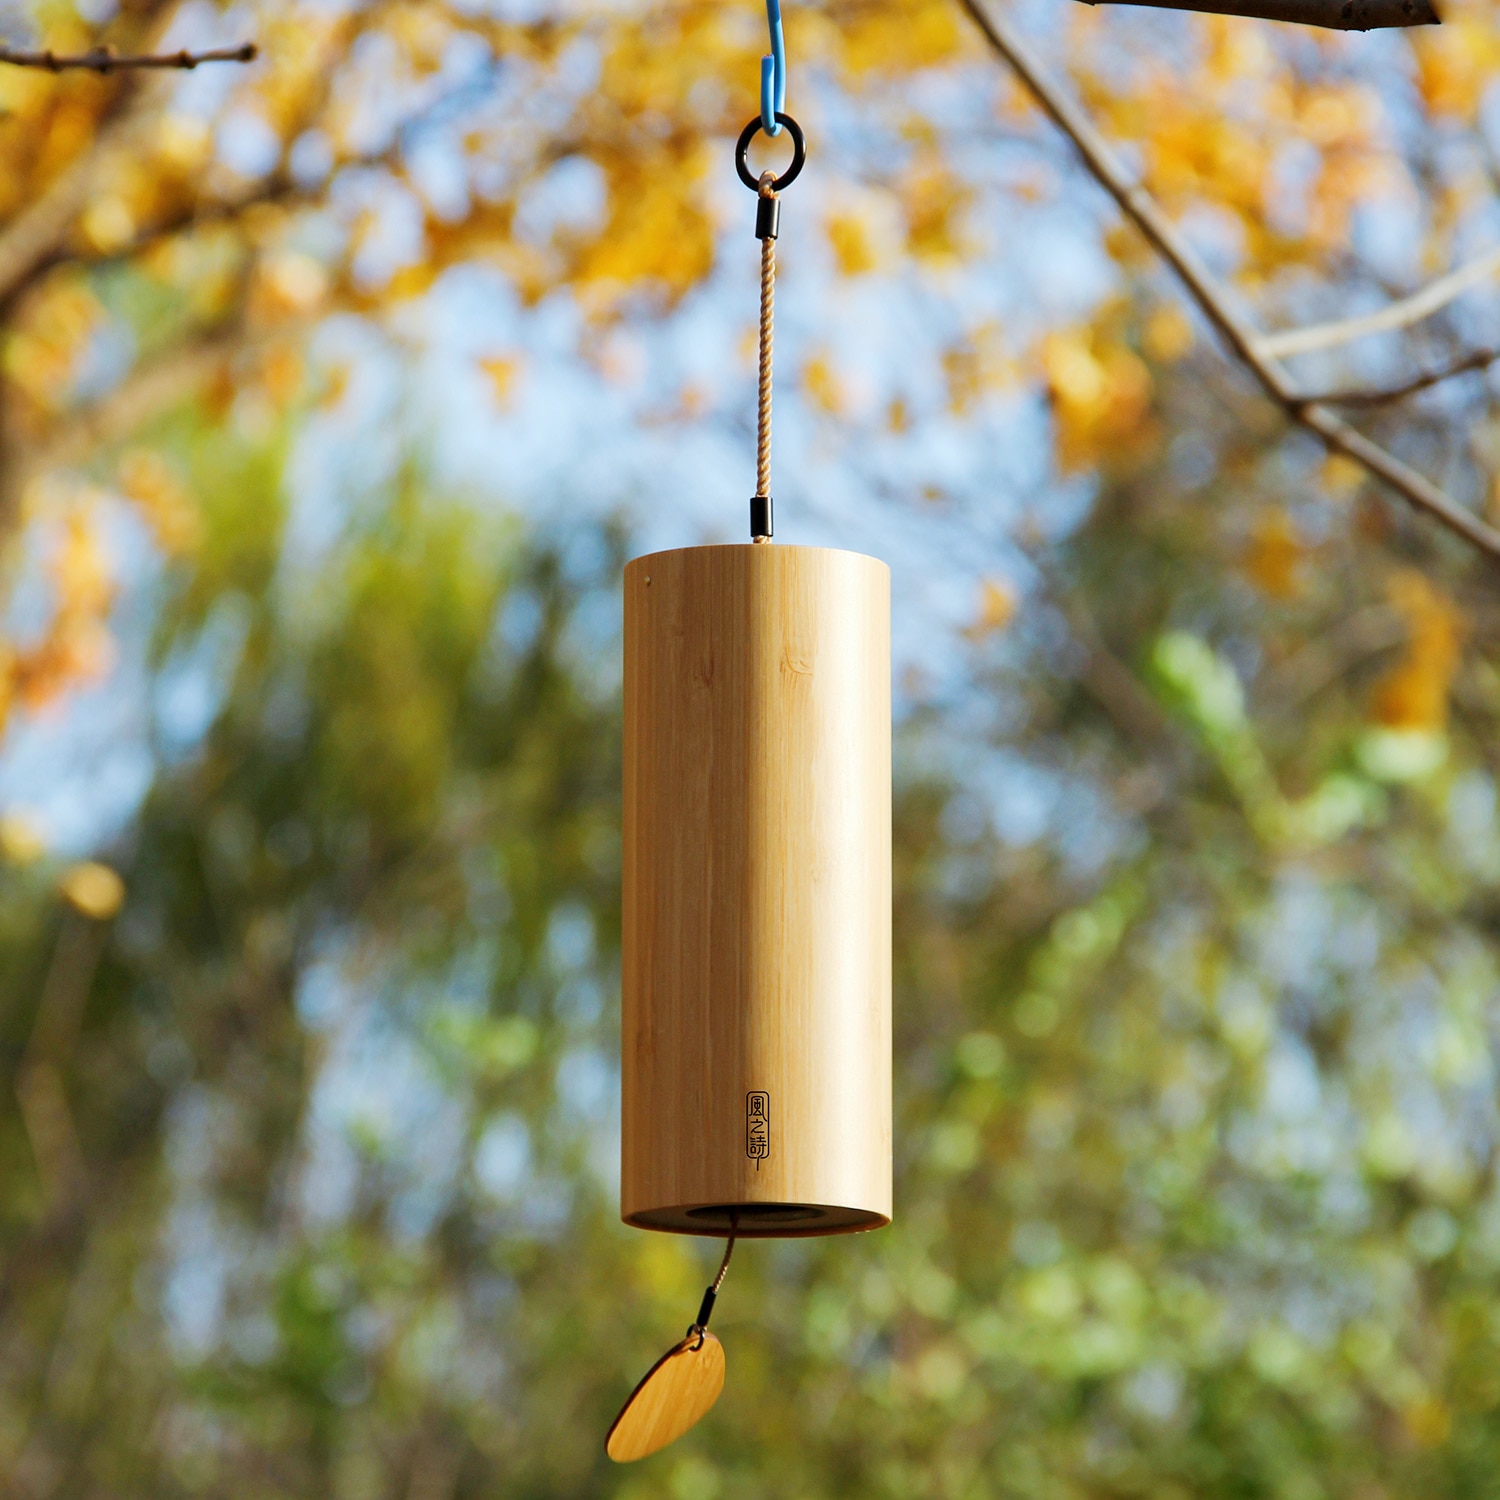 Bambus vindklokke windchime windbell til udendørs have gårdhave boligindretning zen meditation afslapning akkord gbdc